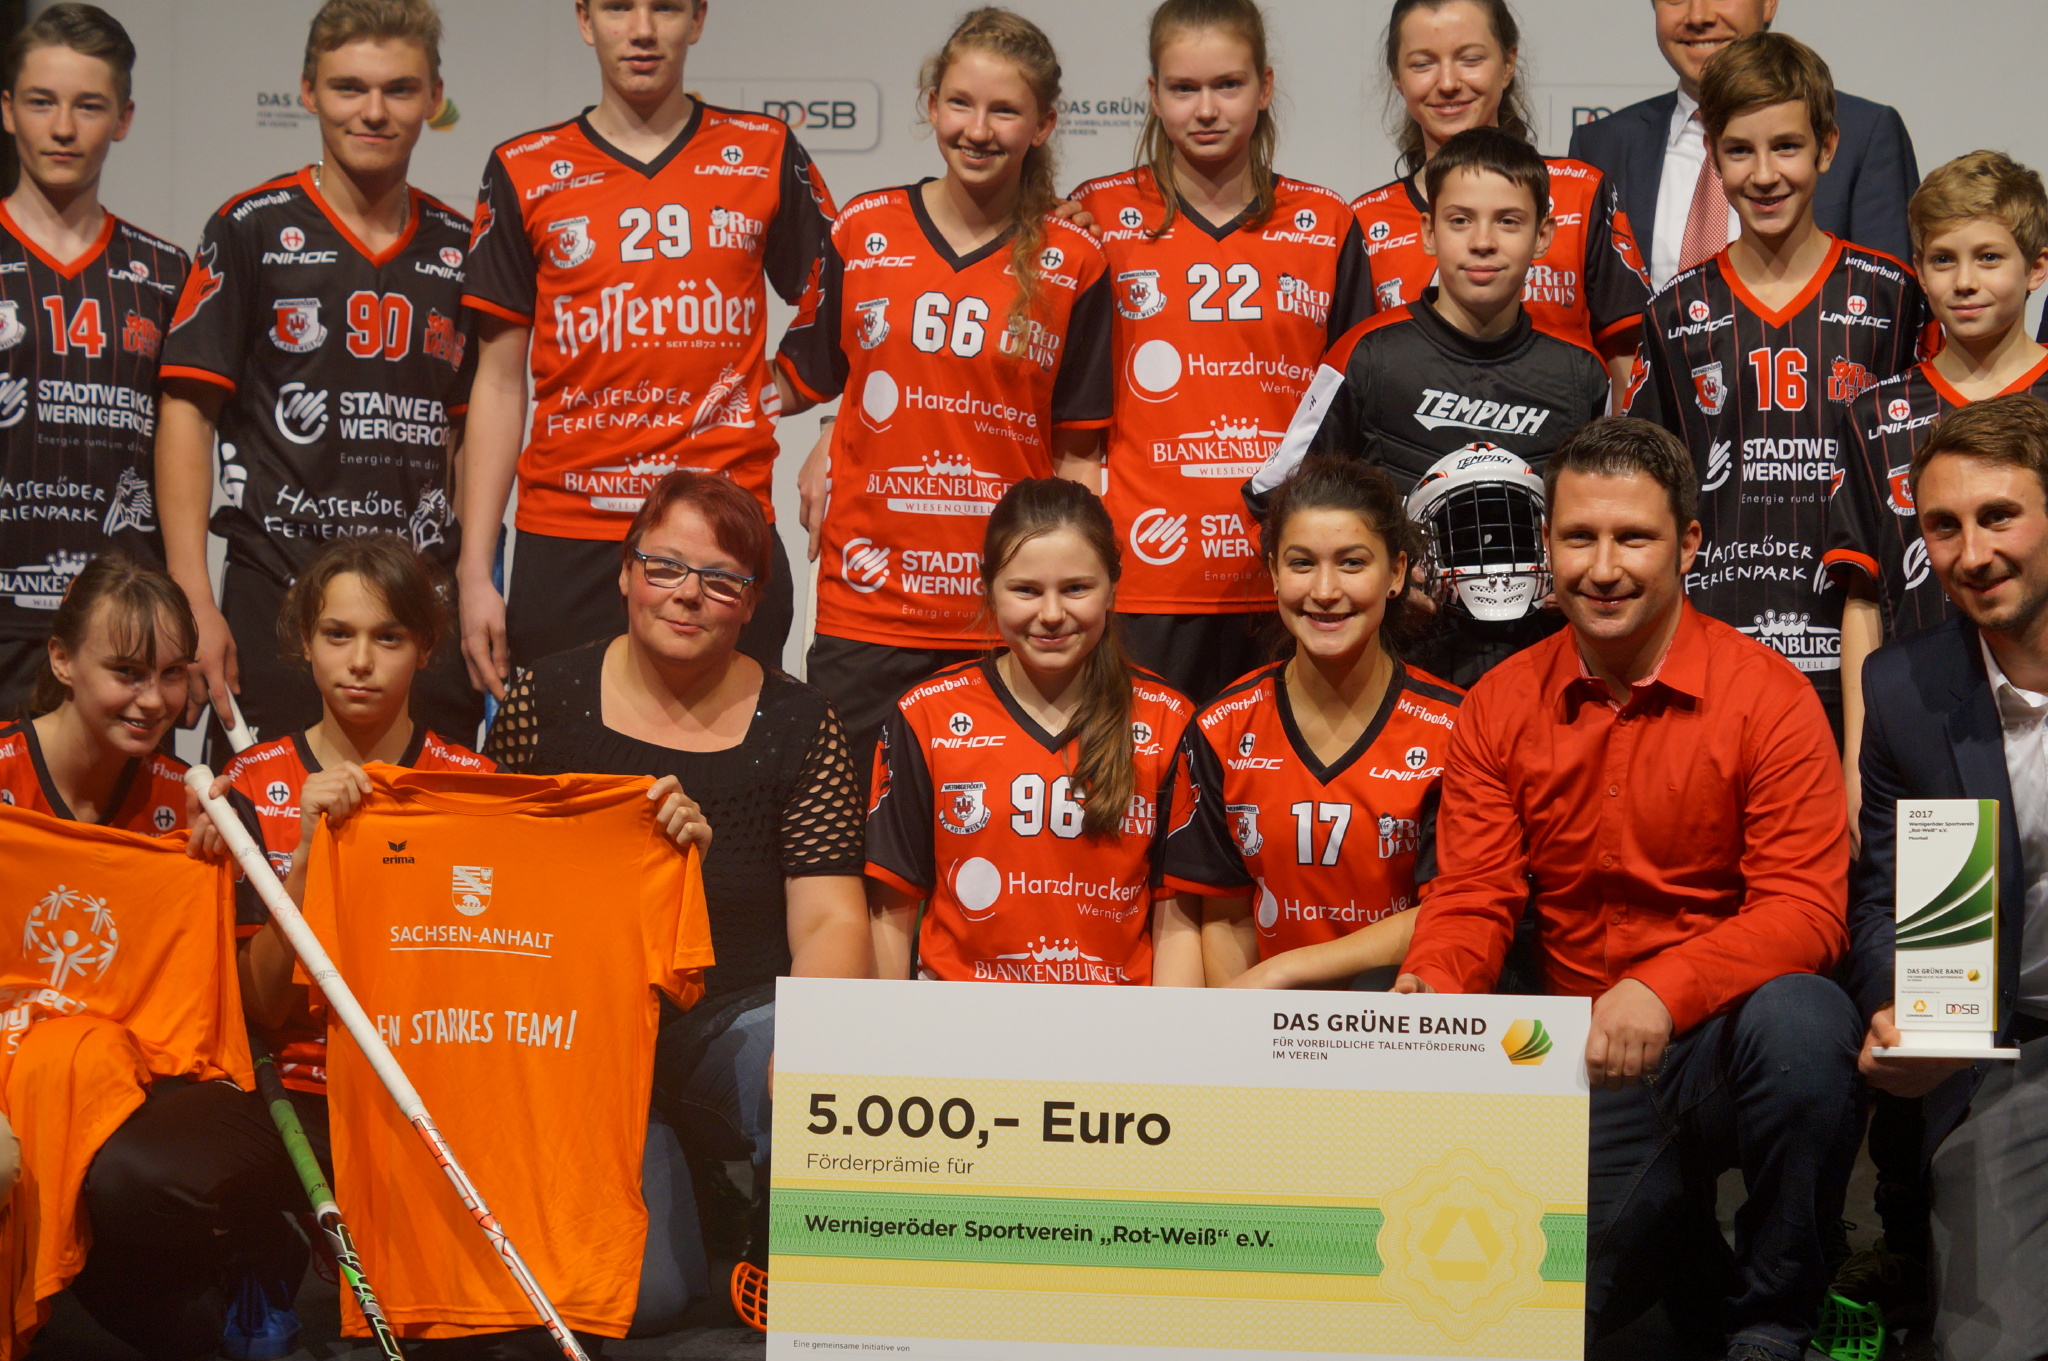 Im letzten jaher erhielten die Floorballer des Wernigeröder SV das "Grüne Band" für vorbildliche Talentförderung.